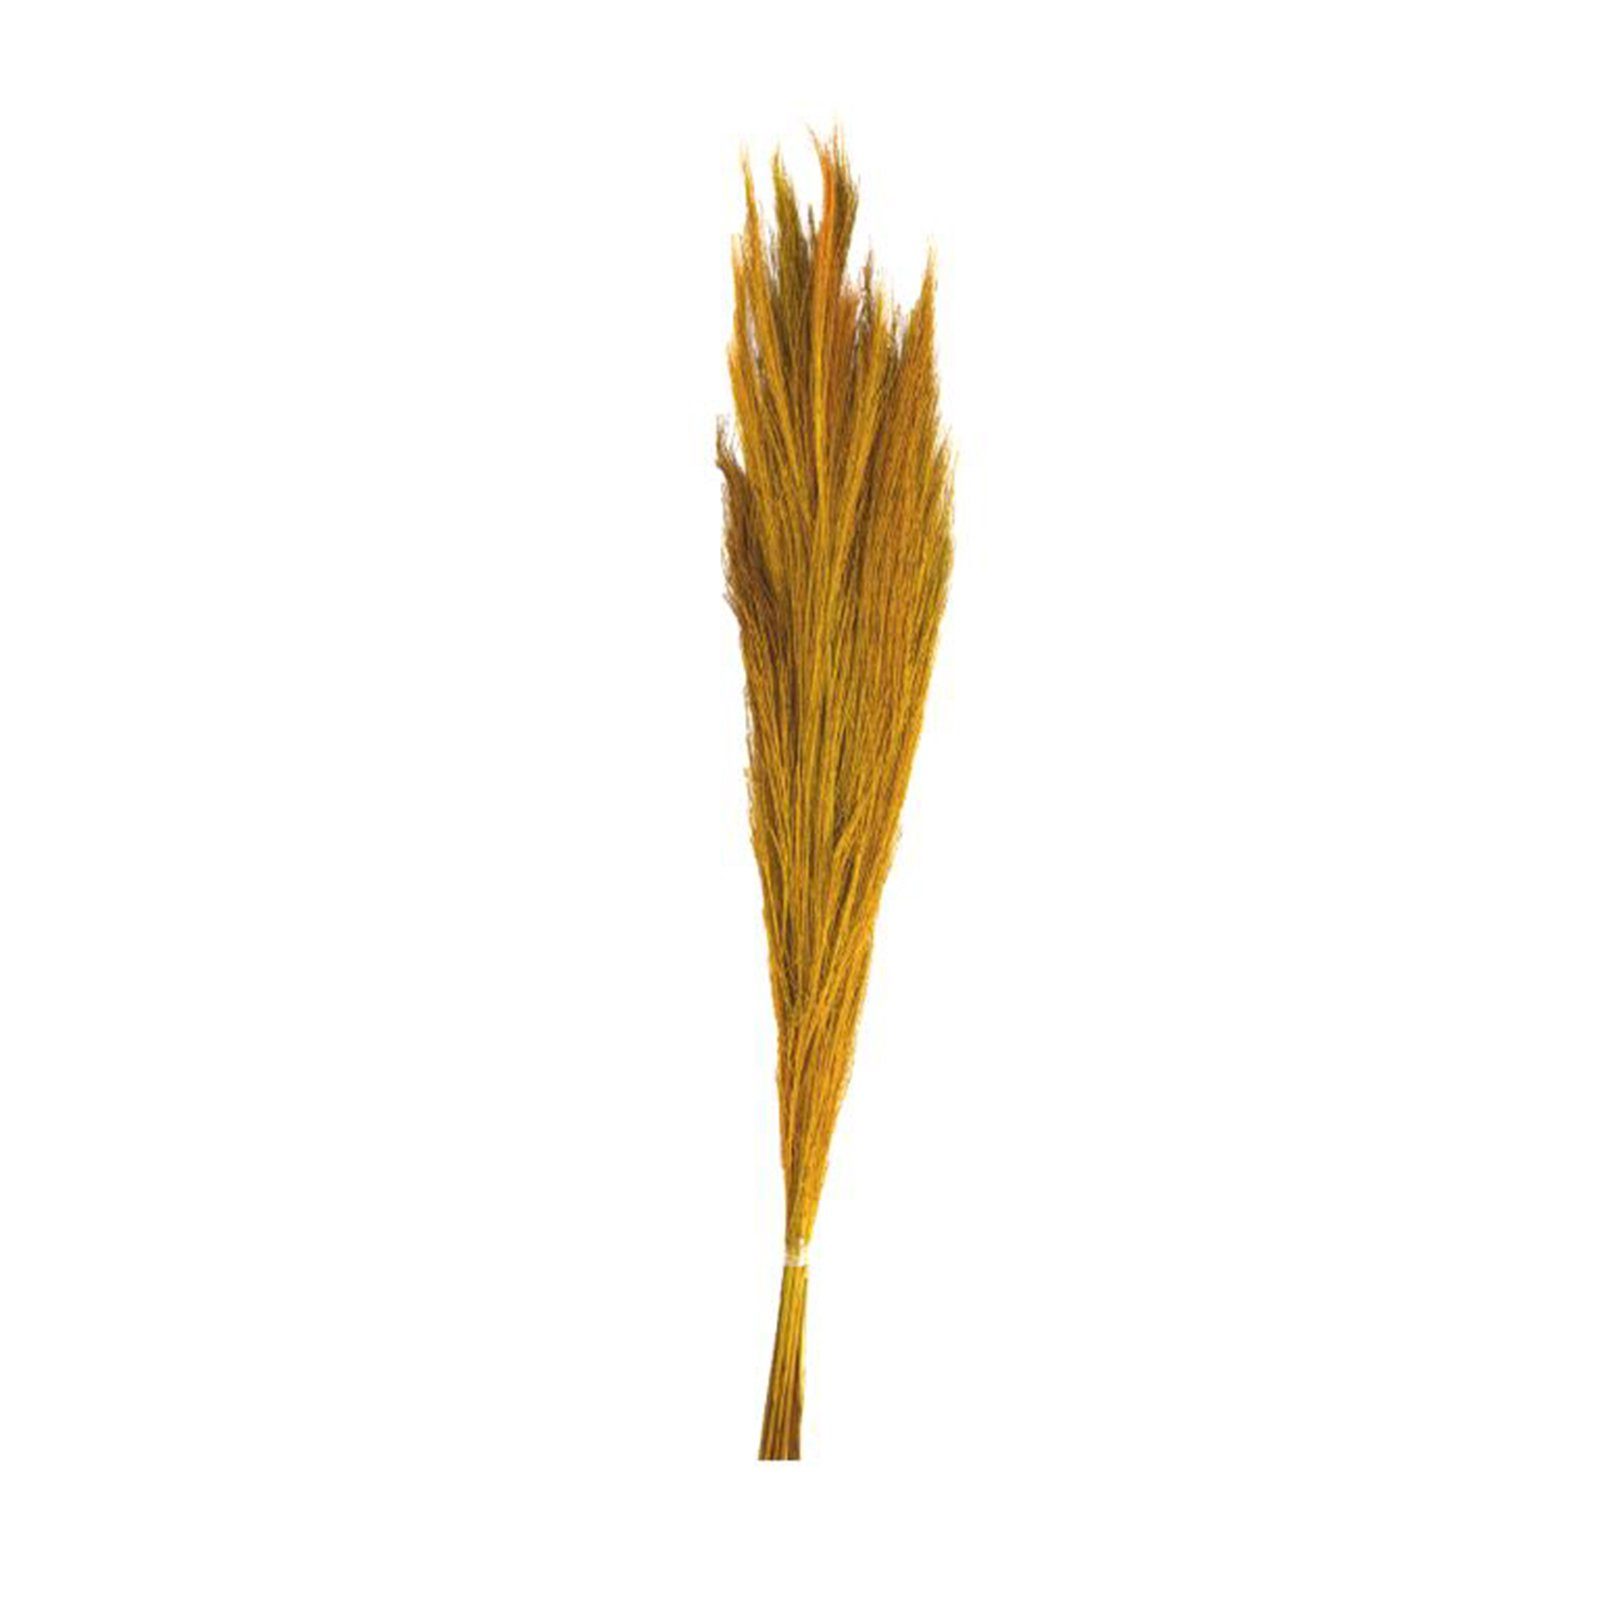 Trockenblume Ginstergras gelb - Broom grass - Thysanolaena - 90-105 cm - 100g, DIJK